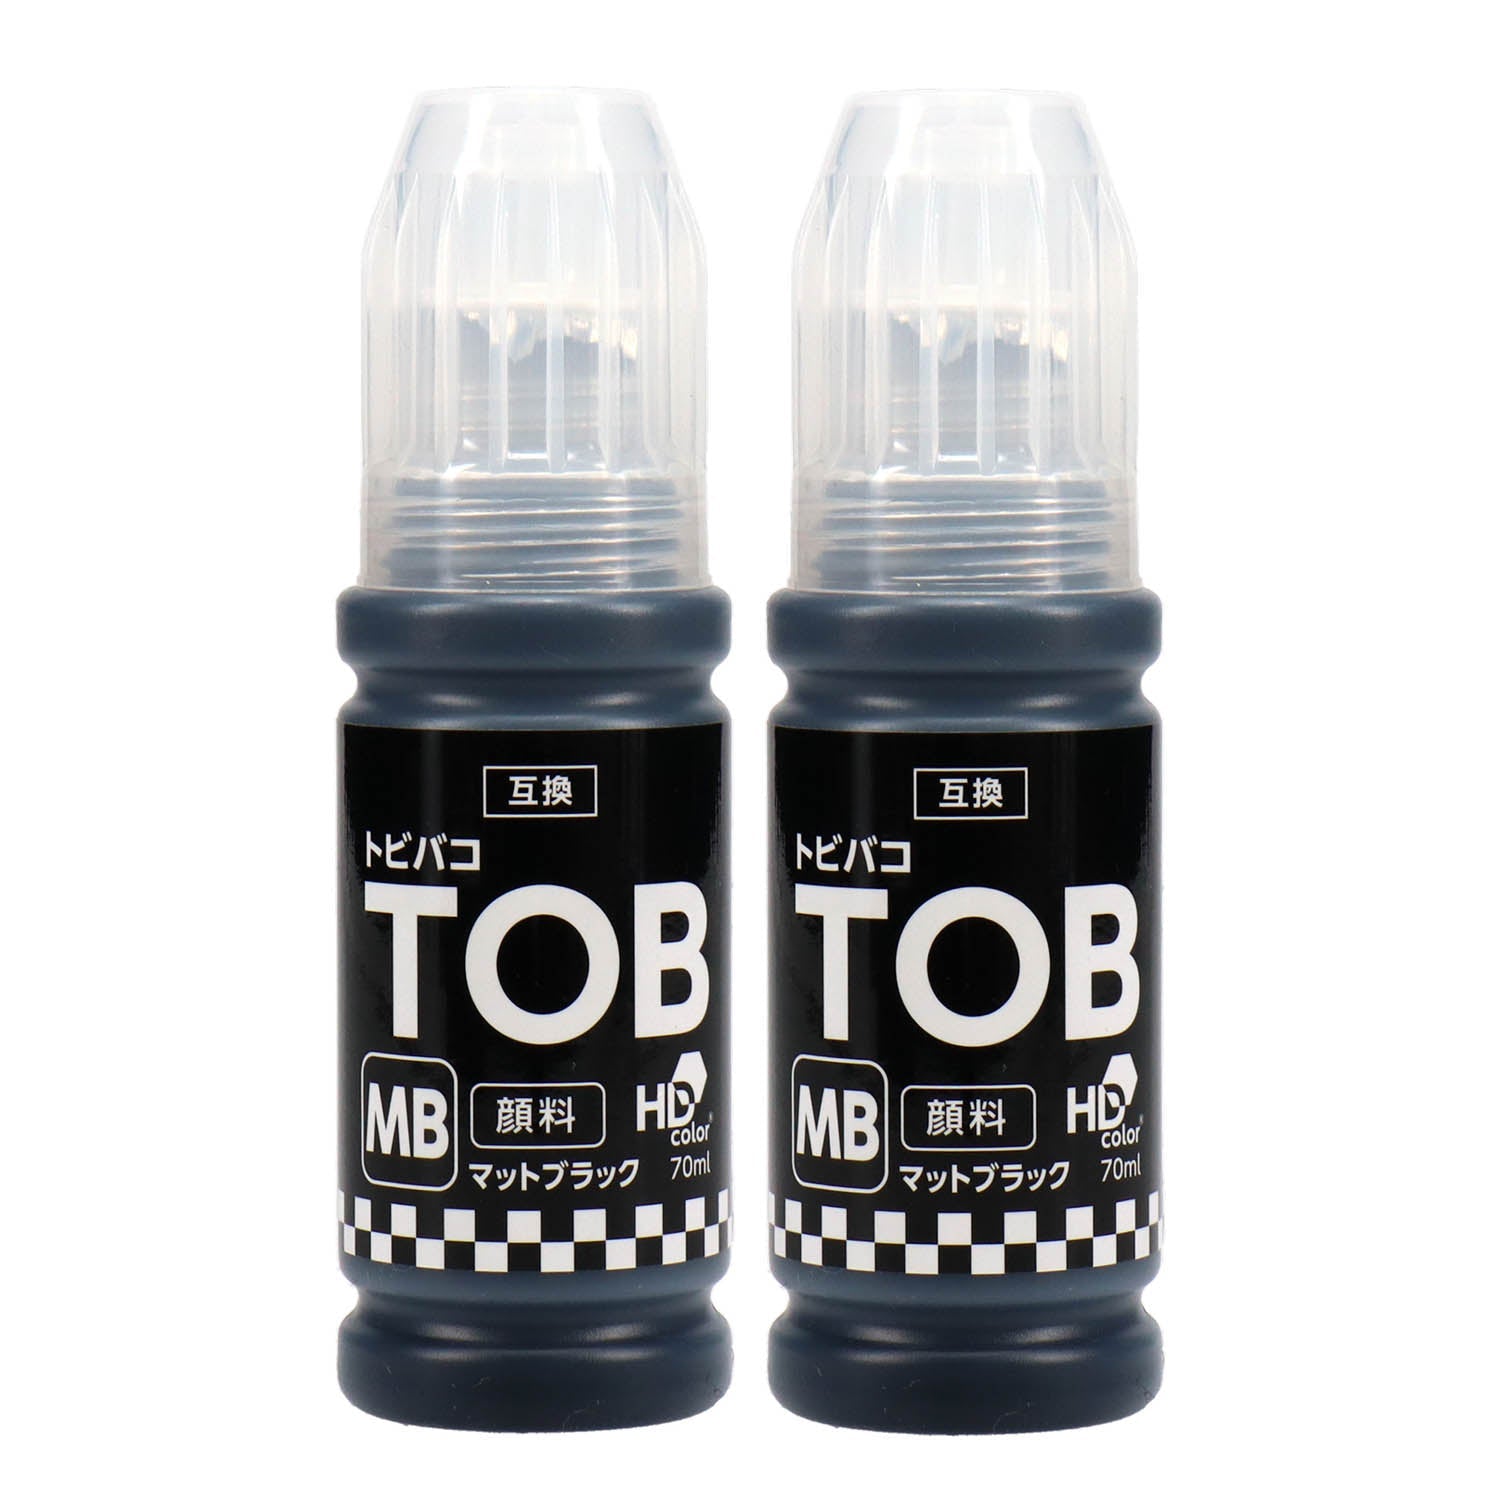 純正品エプソン インクボトル (トビバコ) TOB 5色セット (TOB-PB MB C M Y) - 5